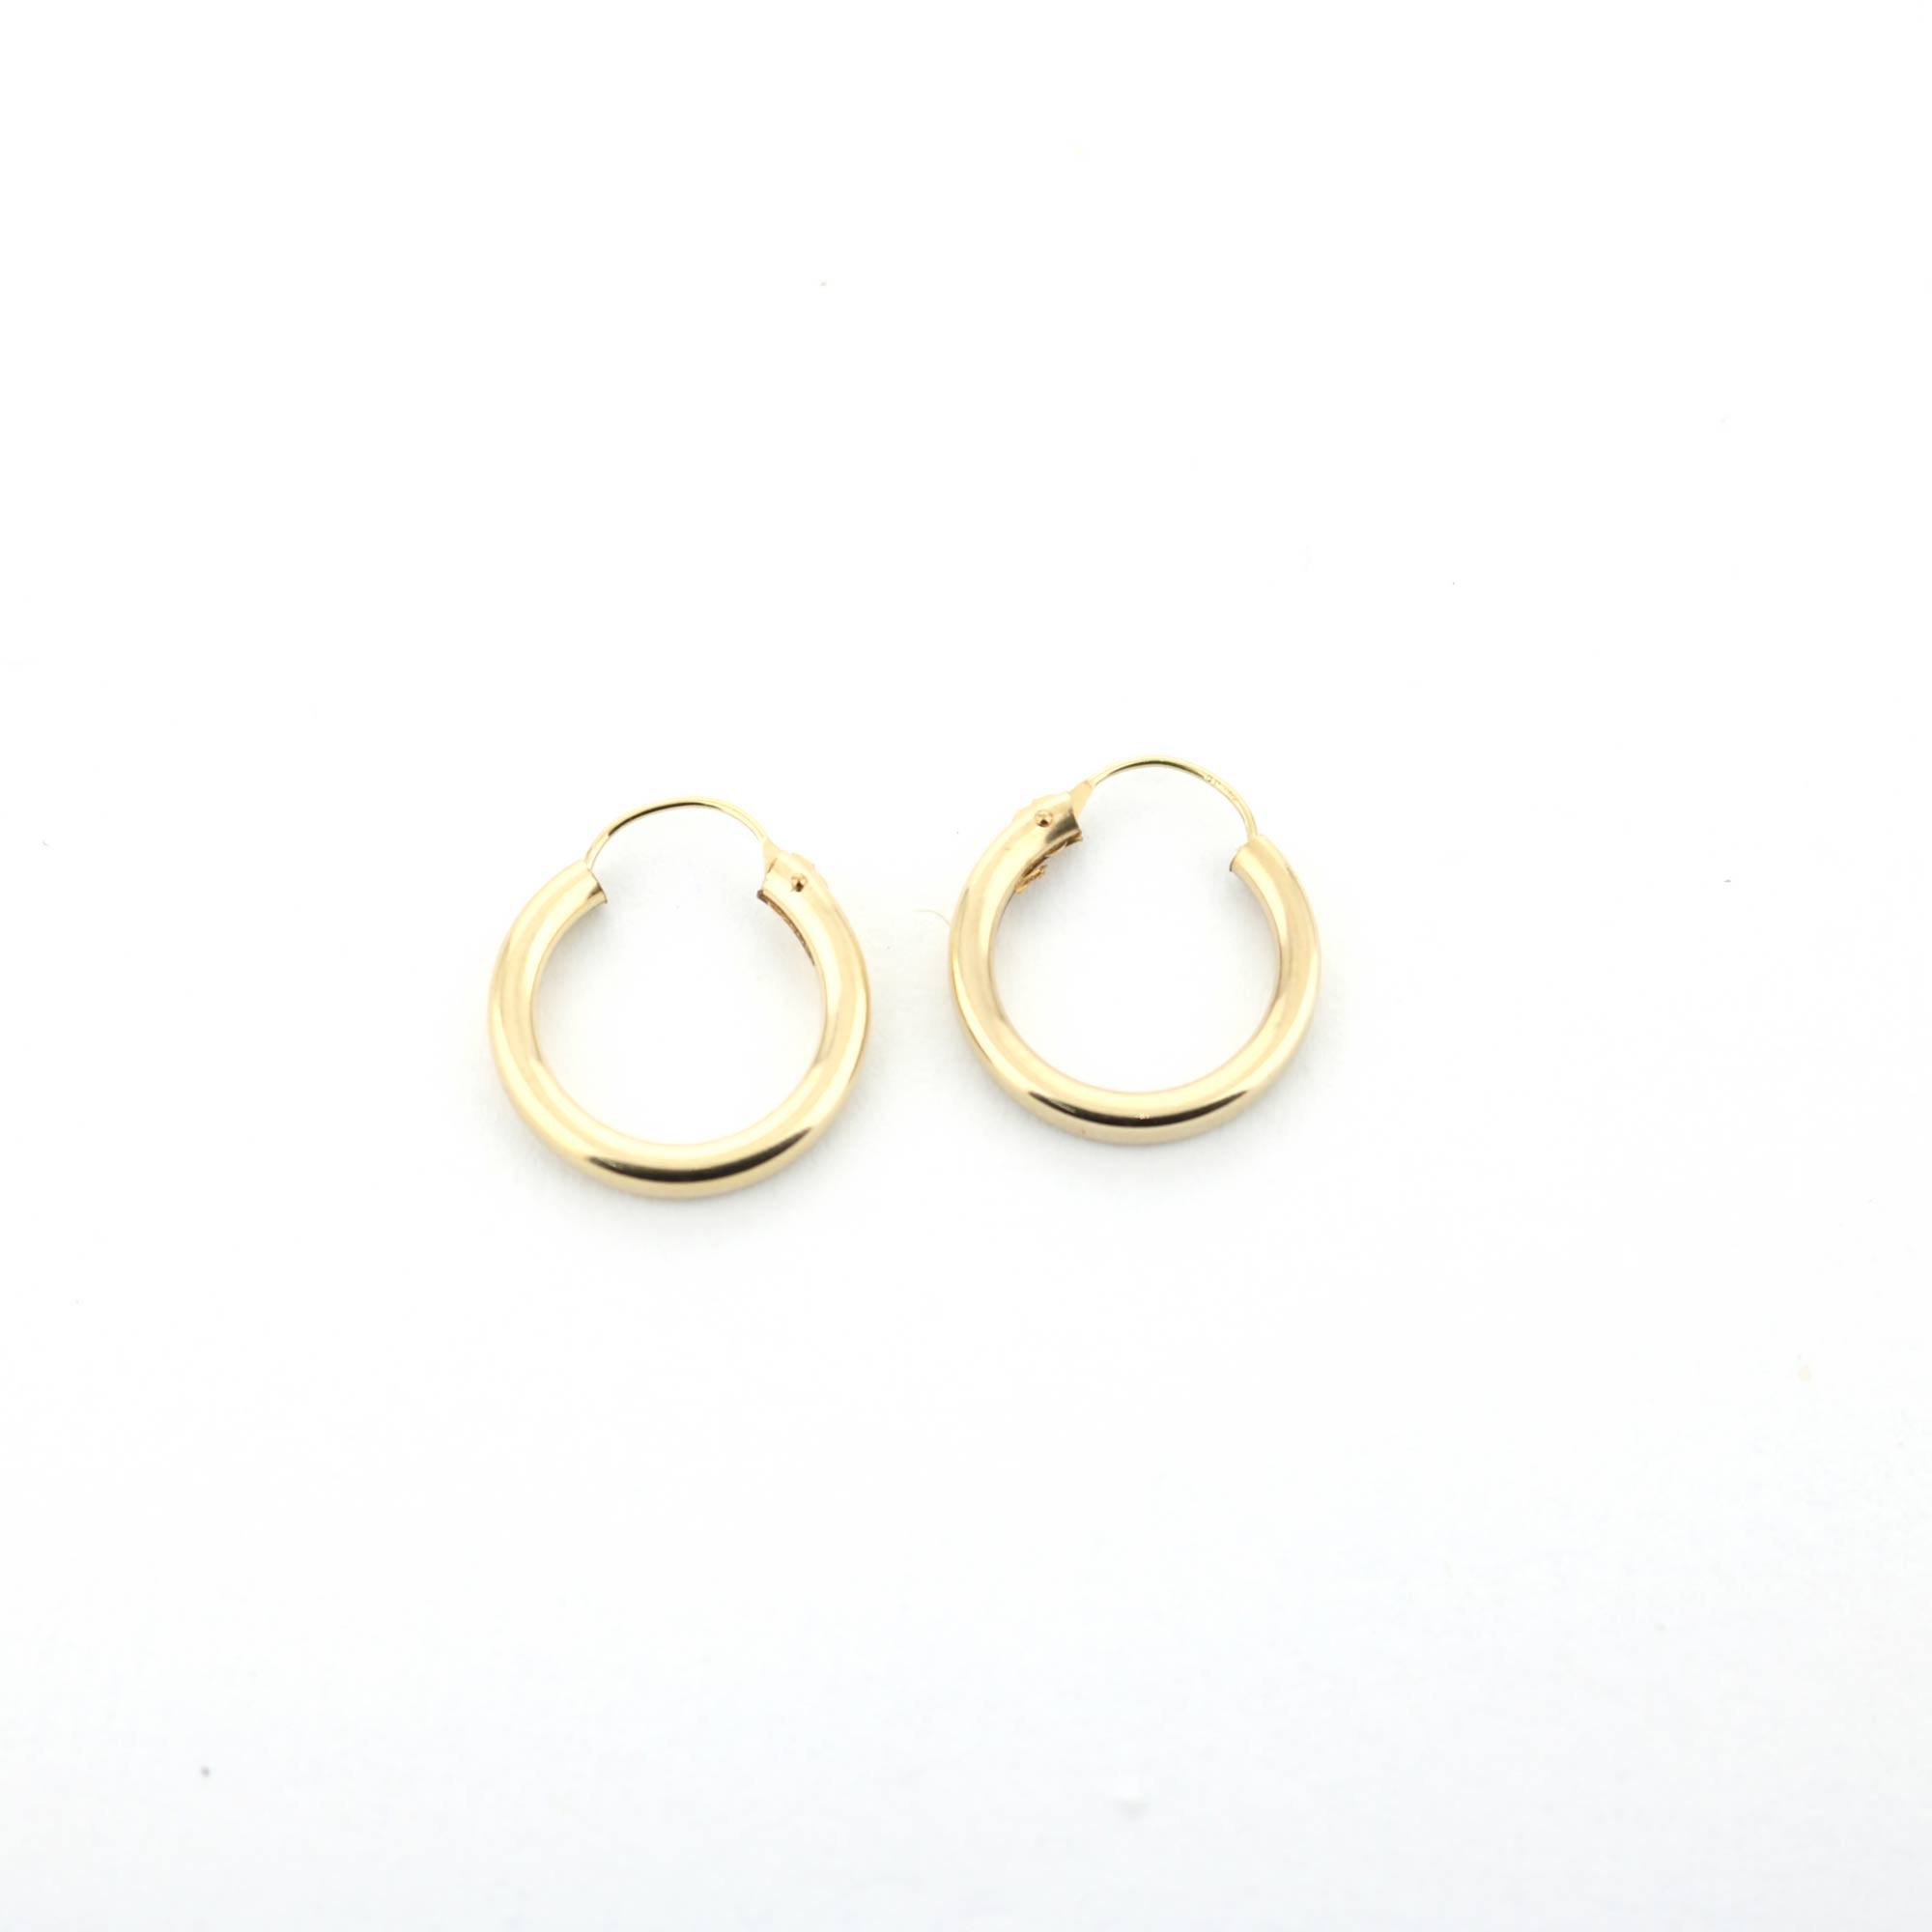 Atlas™ X Hoop Earrings in Rose Gold, Large | Tiffany & Co.